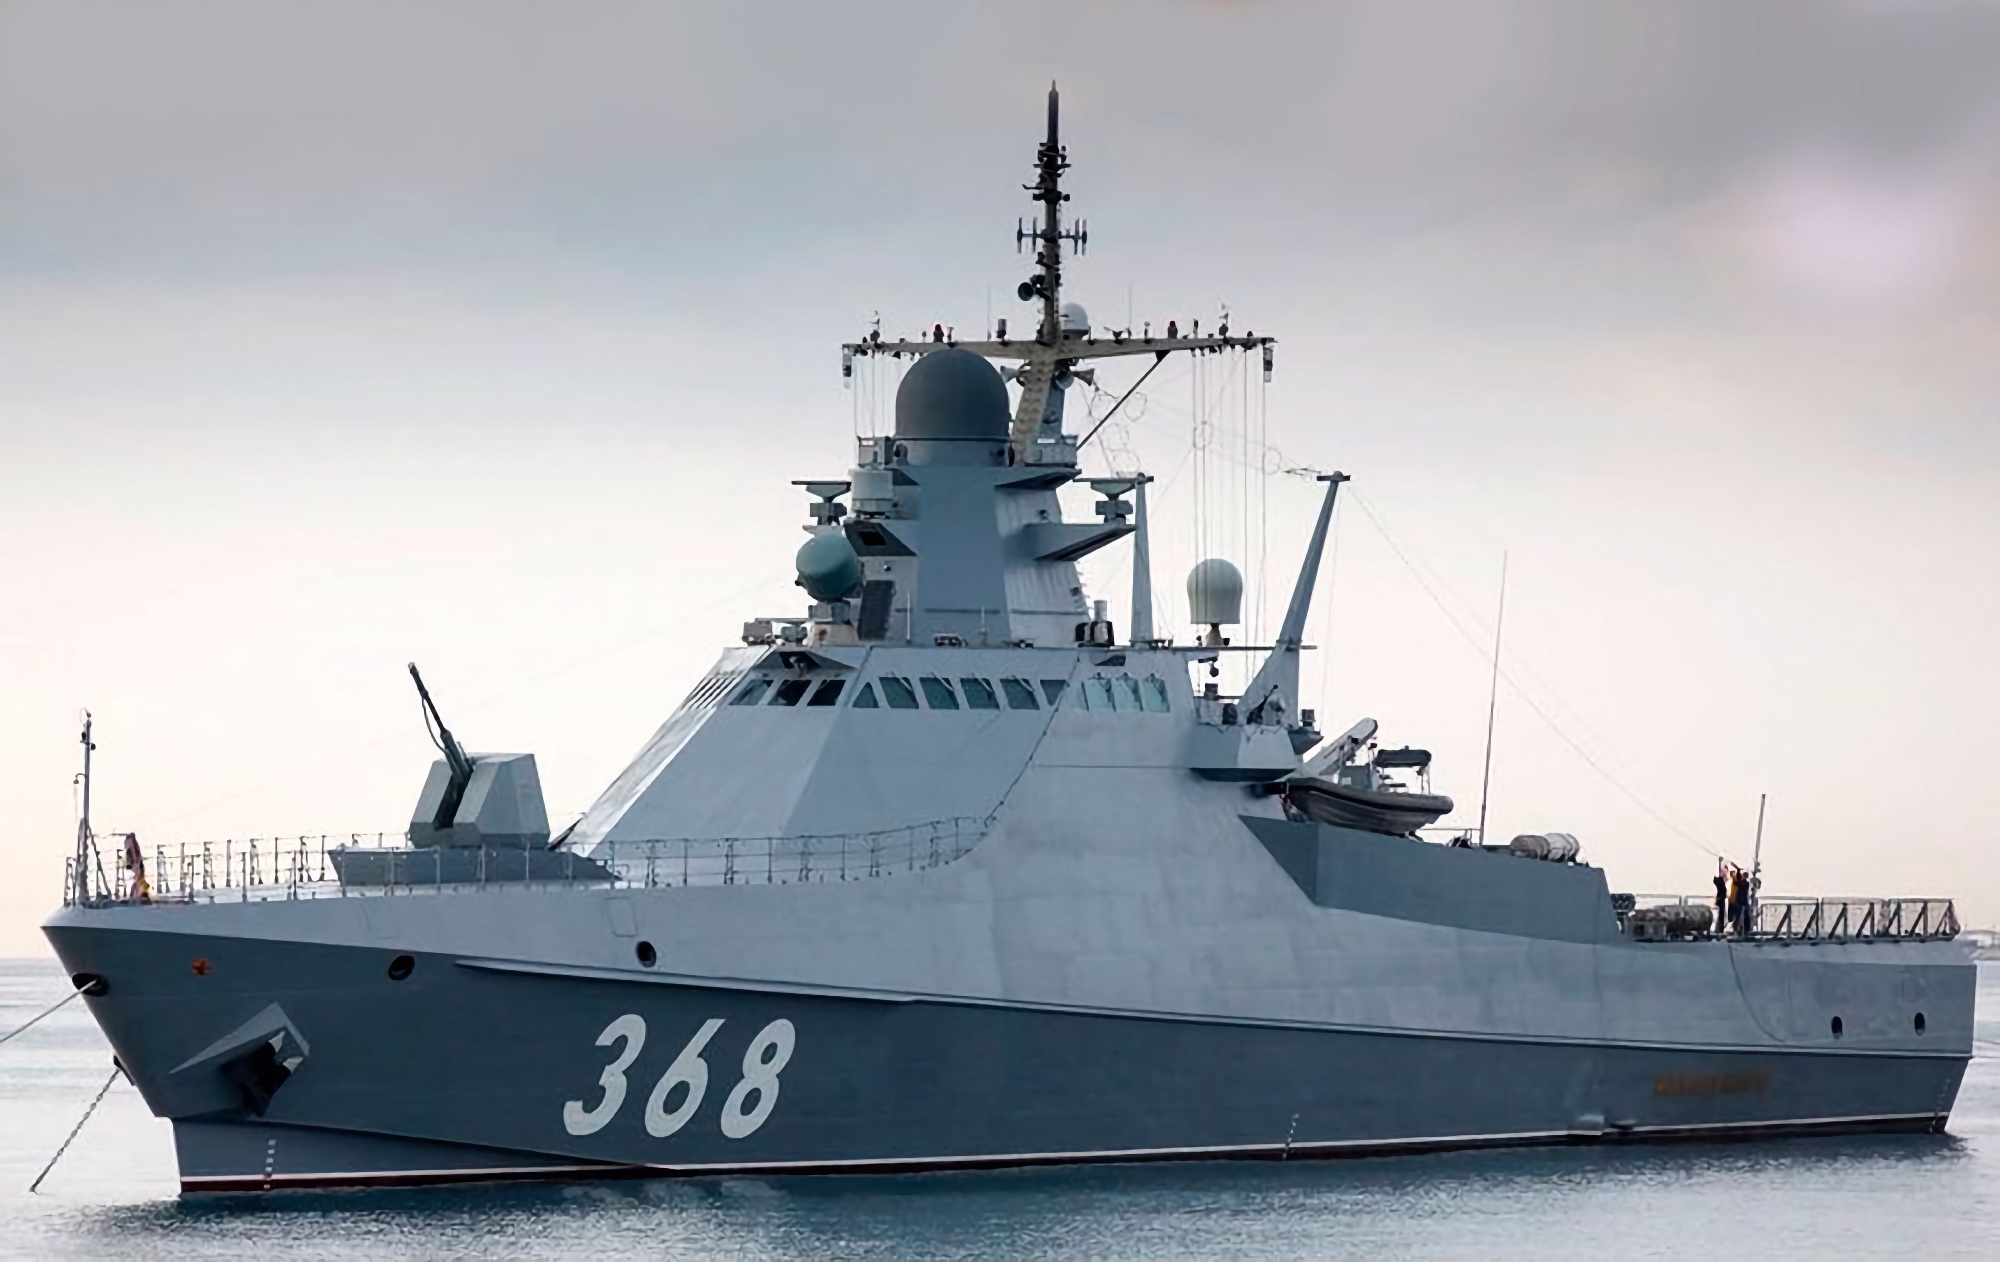 Den ukrainske specialenhed Group 13 ødelagde ved hjælp af en Magura V5 marine drone et russisk skib fra projekt 22160 "Sergey Kotov" til en værdi af 65 millioner dollars.